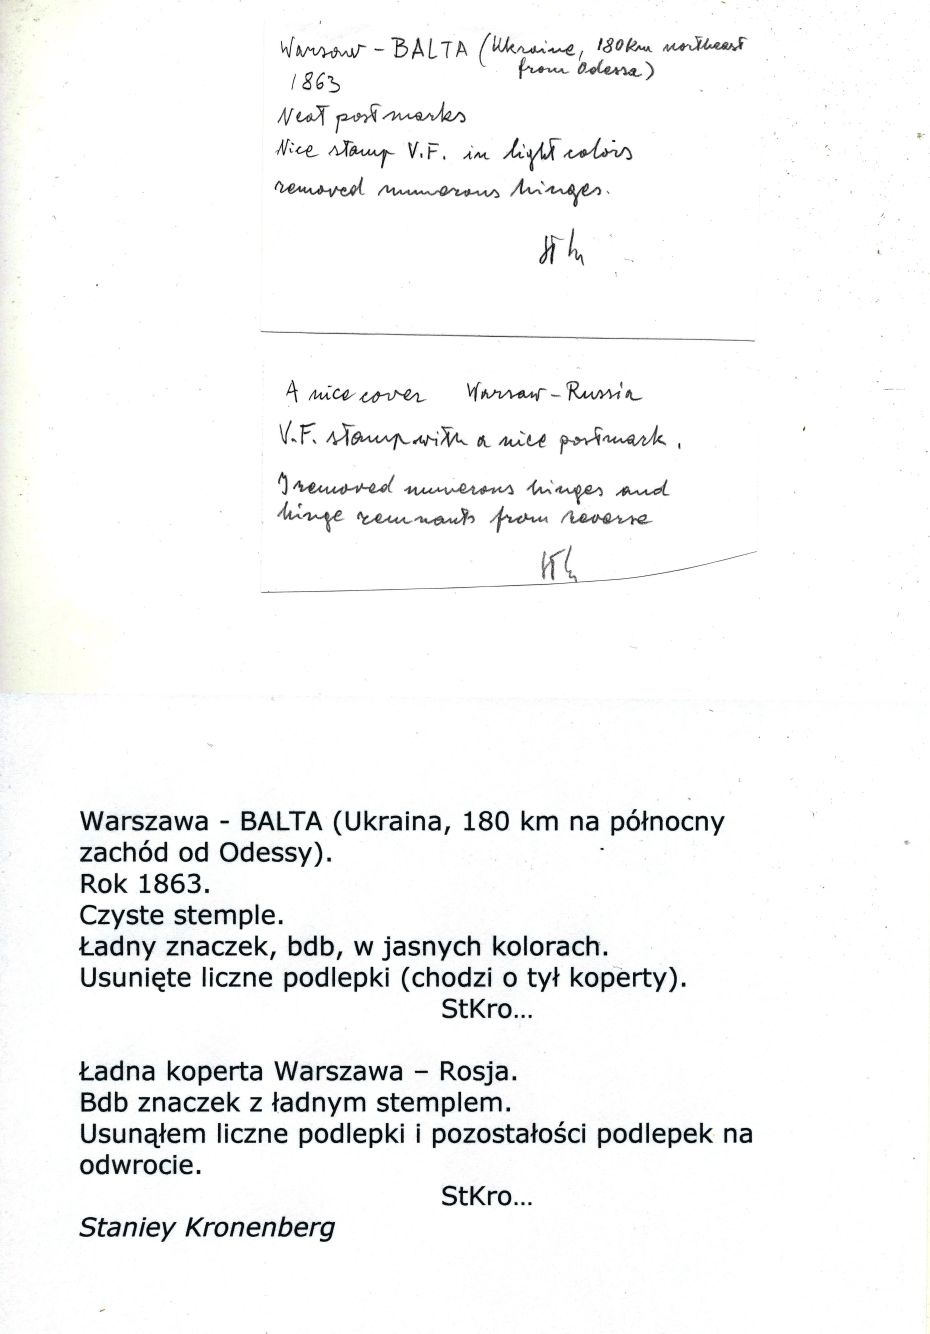 1 - Warszawa (326) 1ac awers koperty, adnotacje Stanleya Kronenberga, listu do Balty w Rosji, obecnie Ukraina, pkt.1B